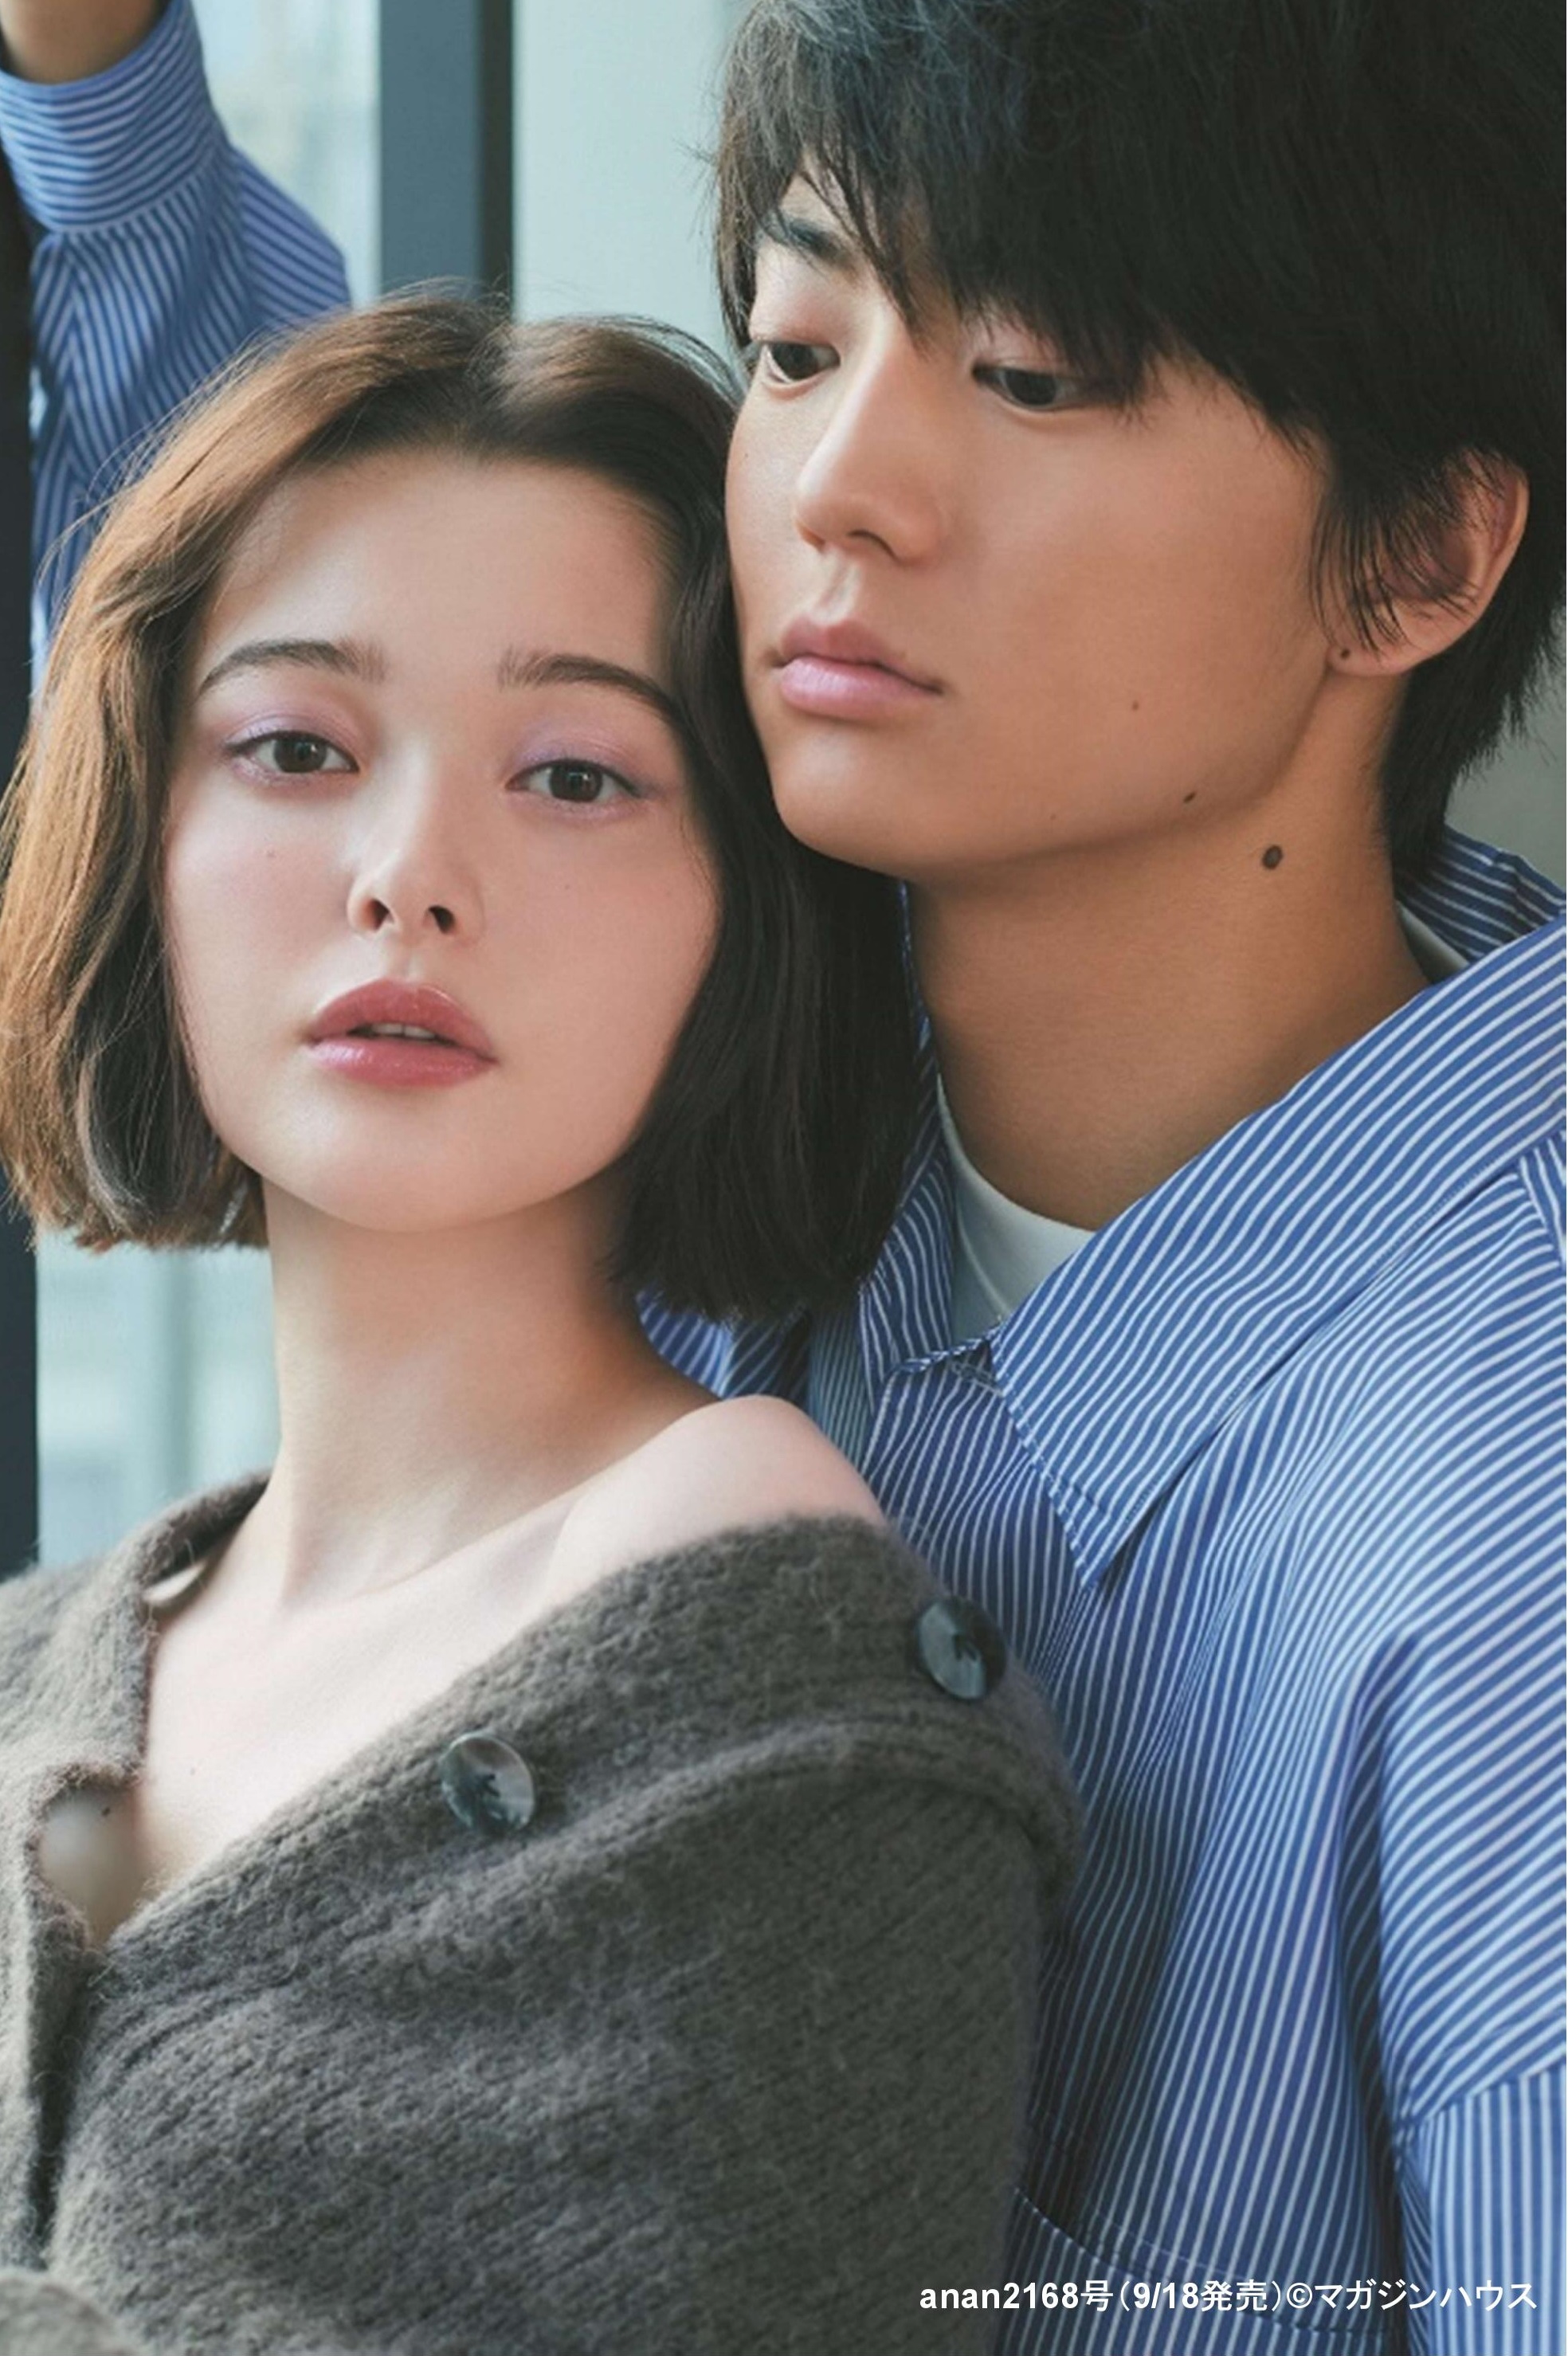 『anan』2019年9月25日号での伊藤健太郎と玉城ティナの“胸キュン距離感”